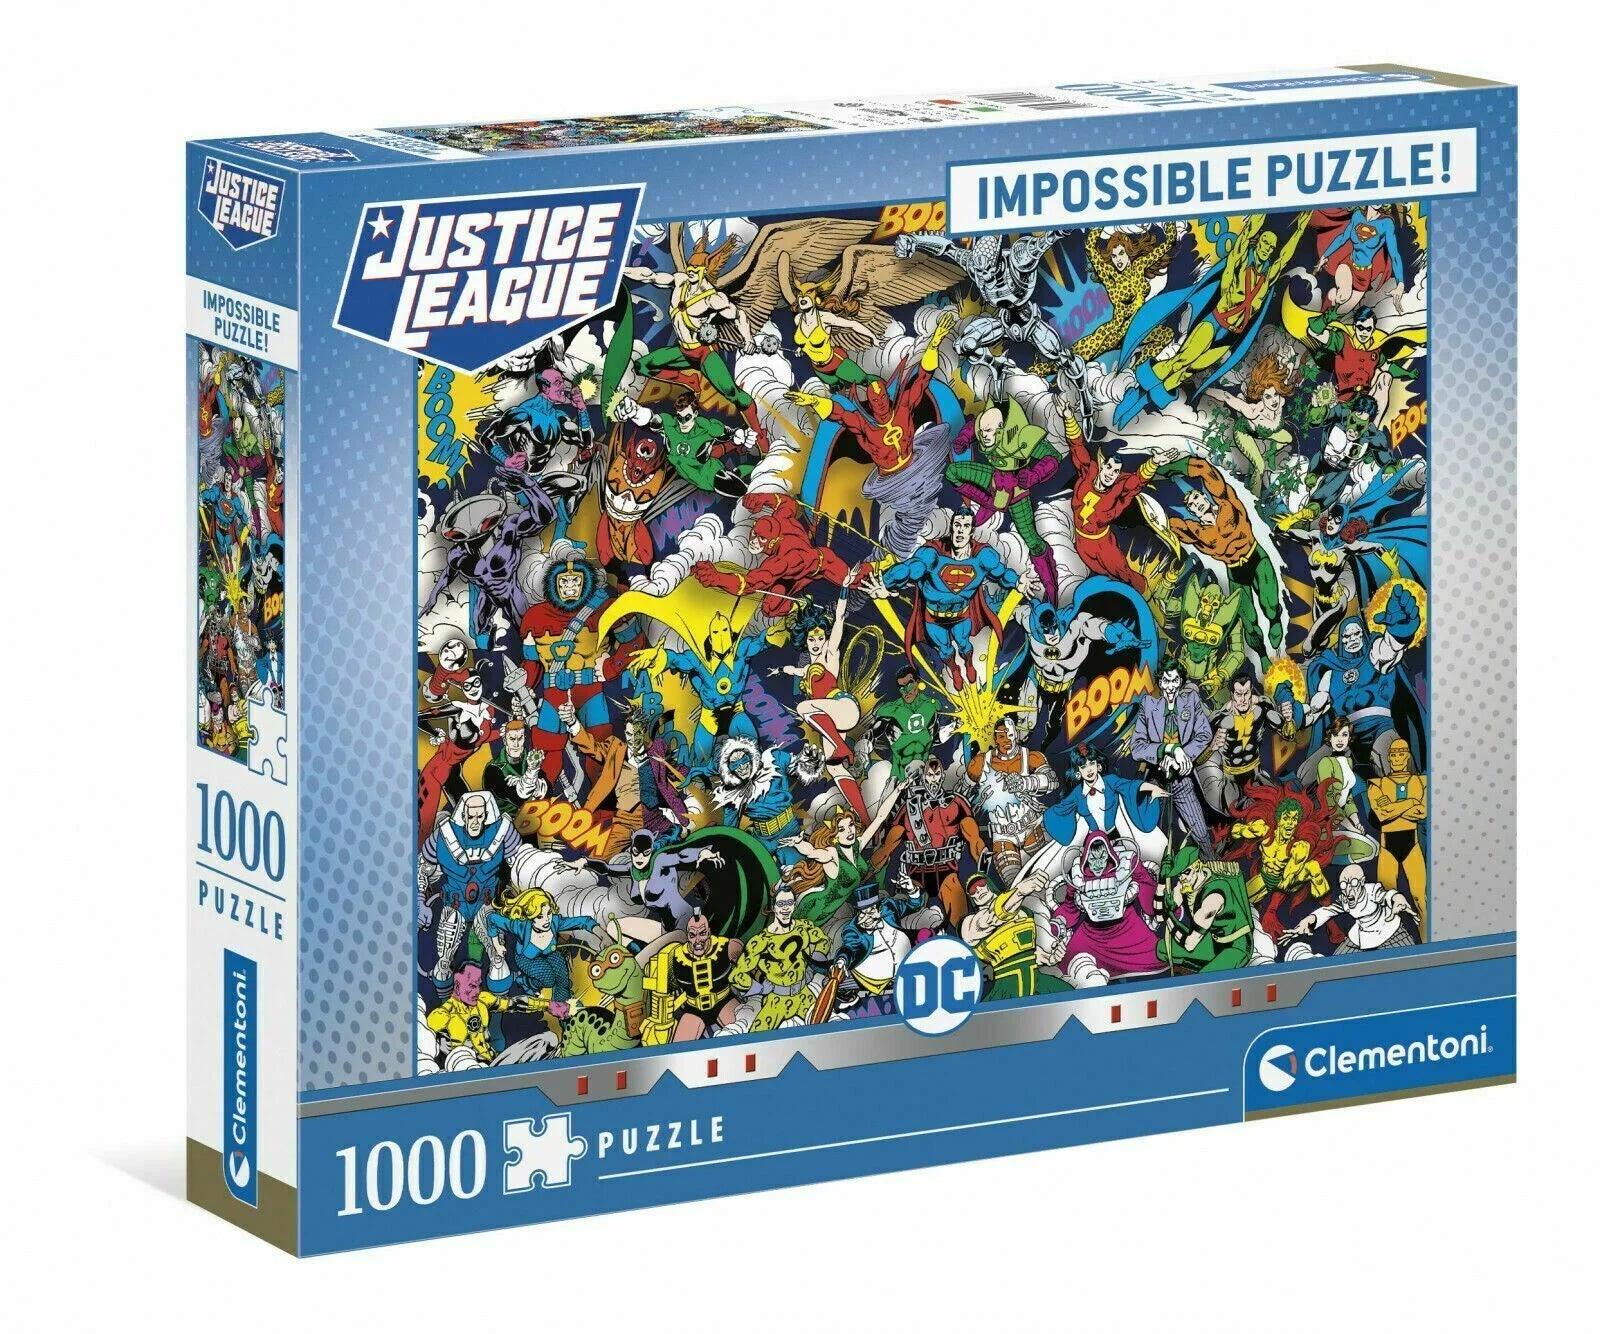 Clementoni Justice League Impossible 1000 Pieces Jigsaw Puzzle - Eclipse Games Puzzles Novelties